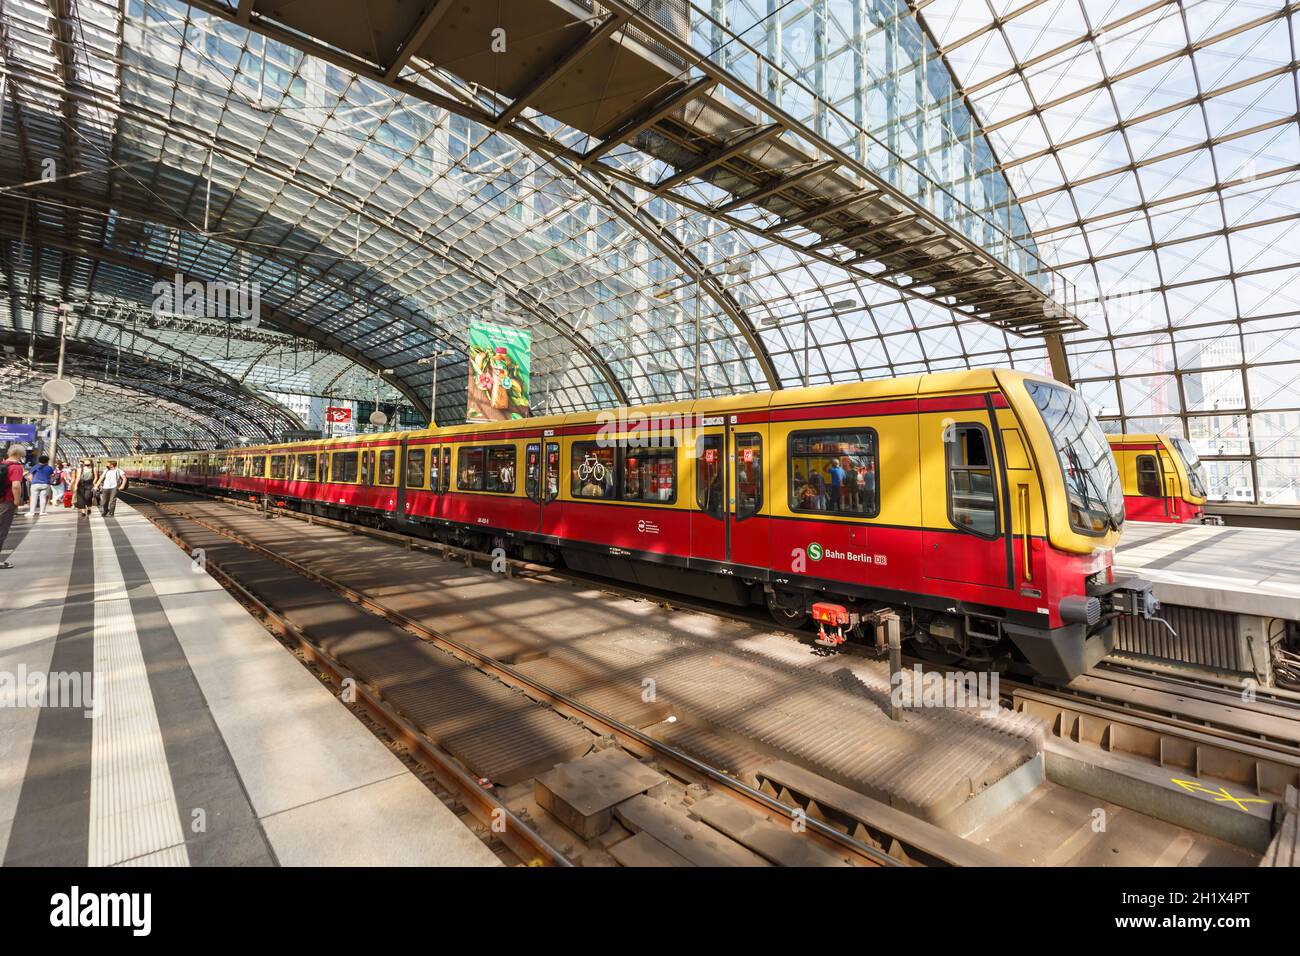 Berlino, Germania - 20 agosto 2020: Treno S-Bahn Berlino S Bahn alla stazione centrale Hauptbahnhof Hbf in Germania. Foto Stock